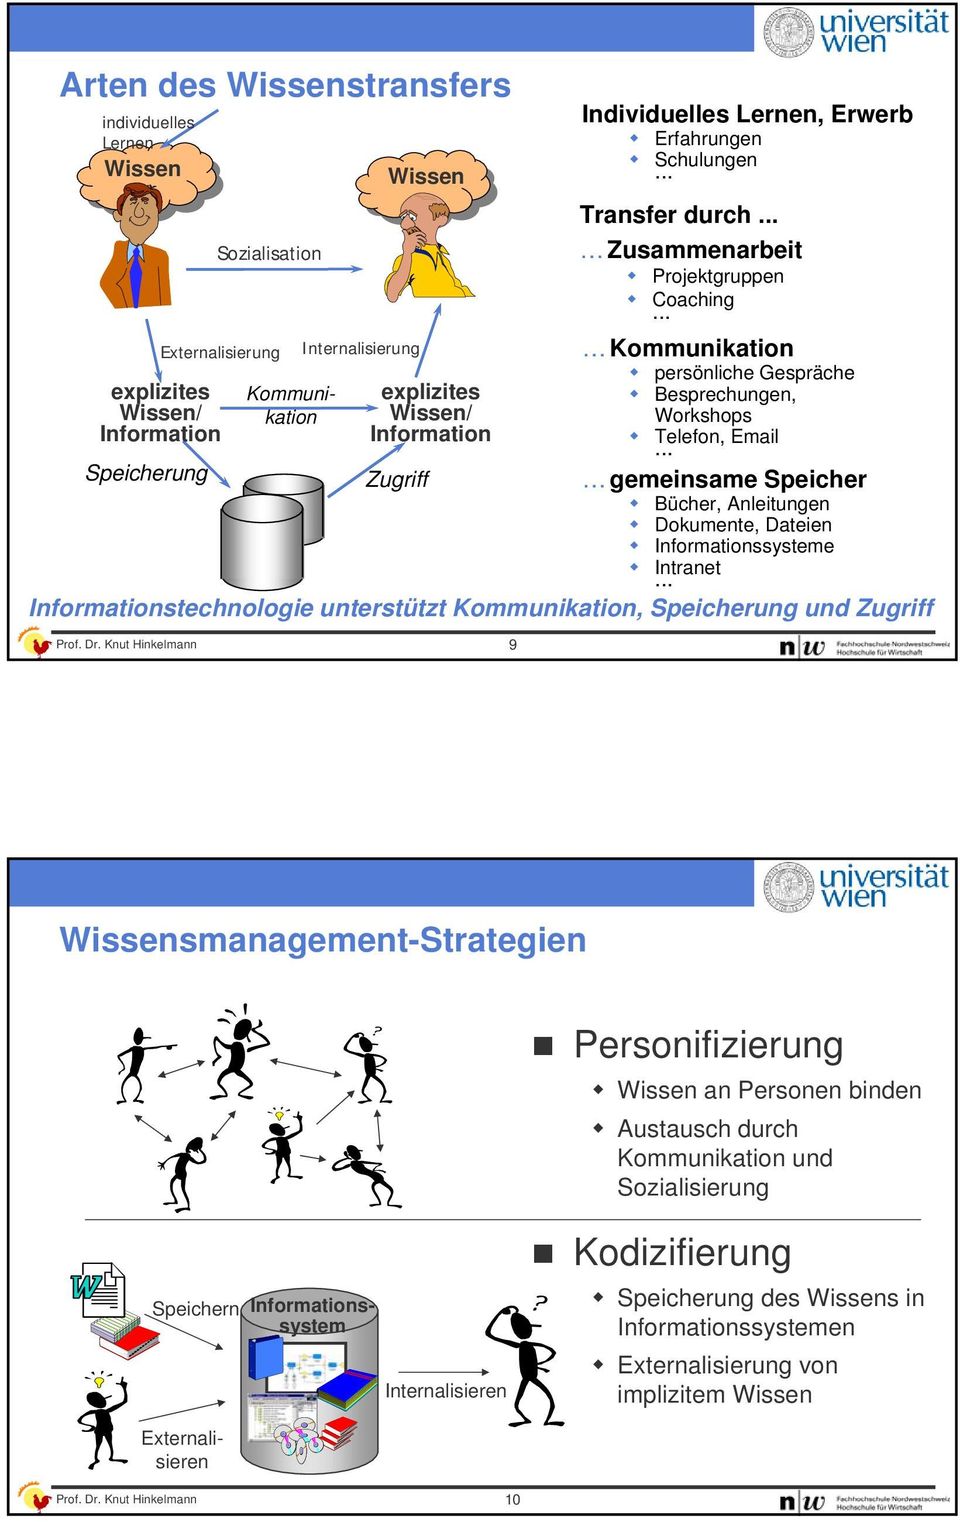 Knut Hinkelmann 9 Individuelles Lernen, Erwerb Erfahrungen Schulungen... Transfer durch... Zusammenarbeit Projektgruppen Coaching.